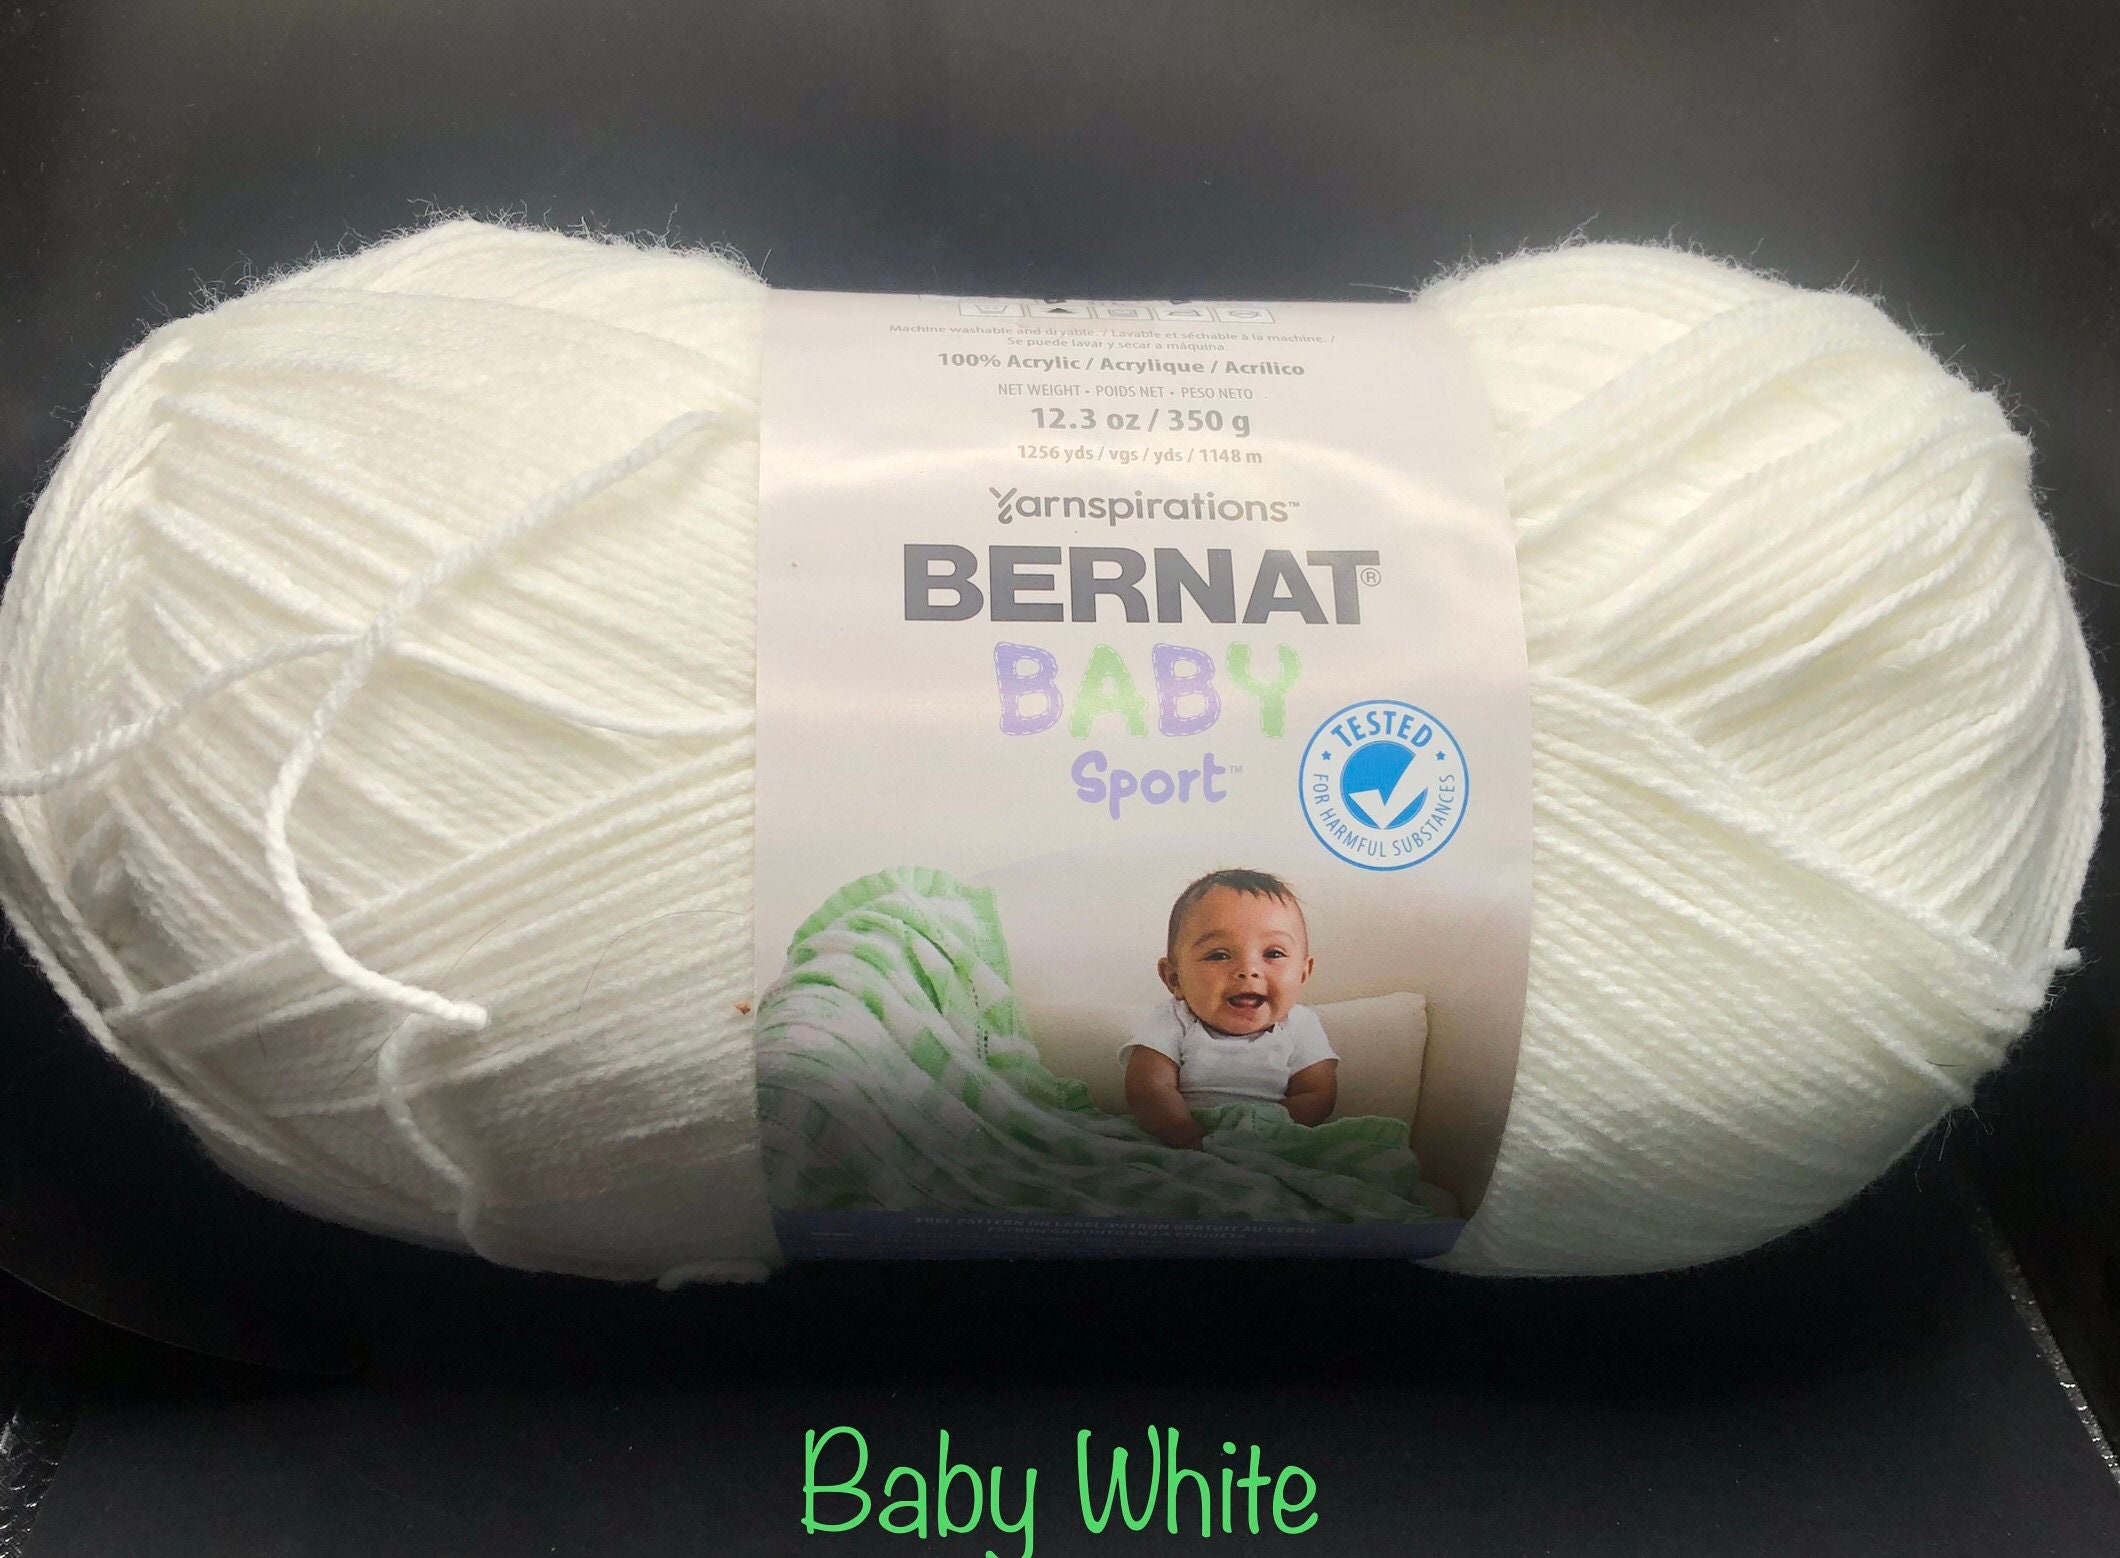 Baby White Bernat Baby Sport 